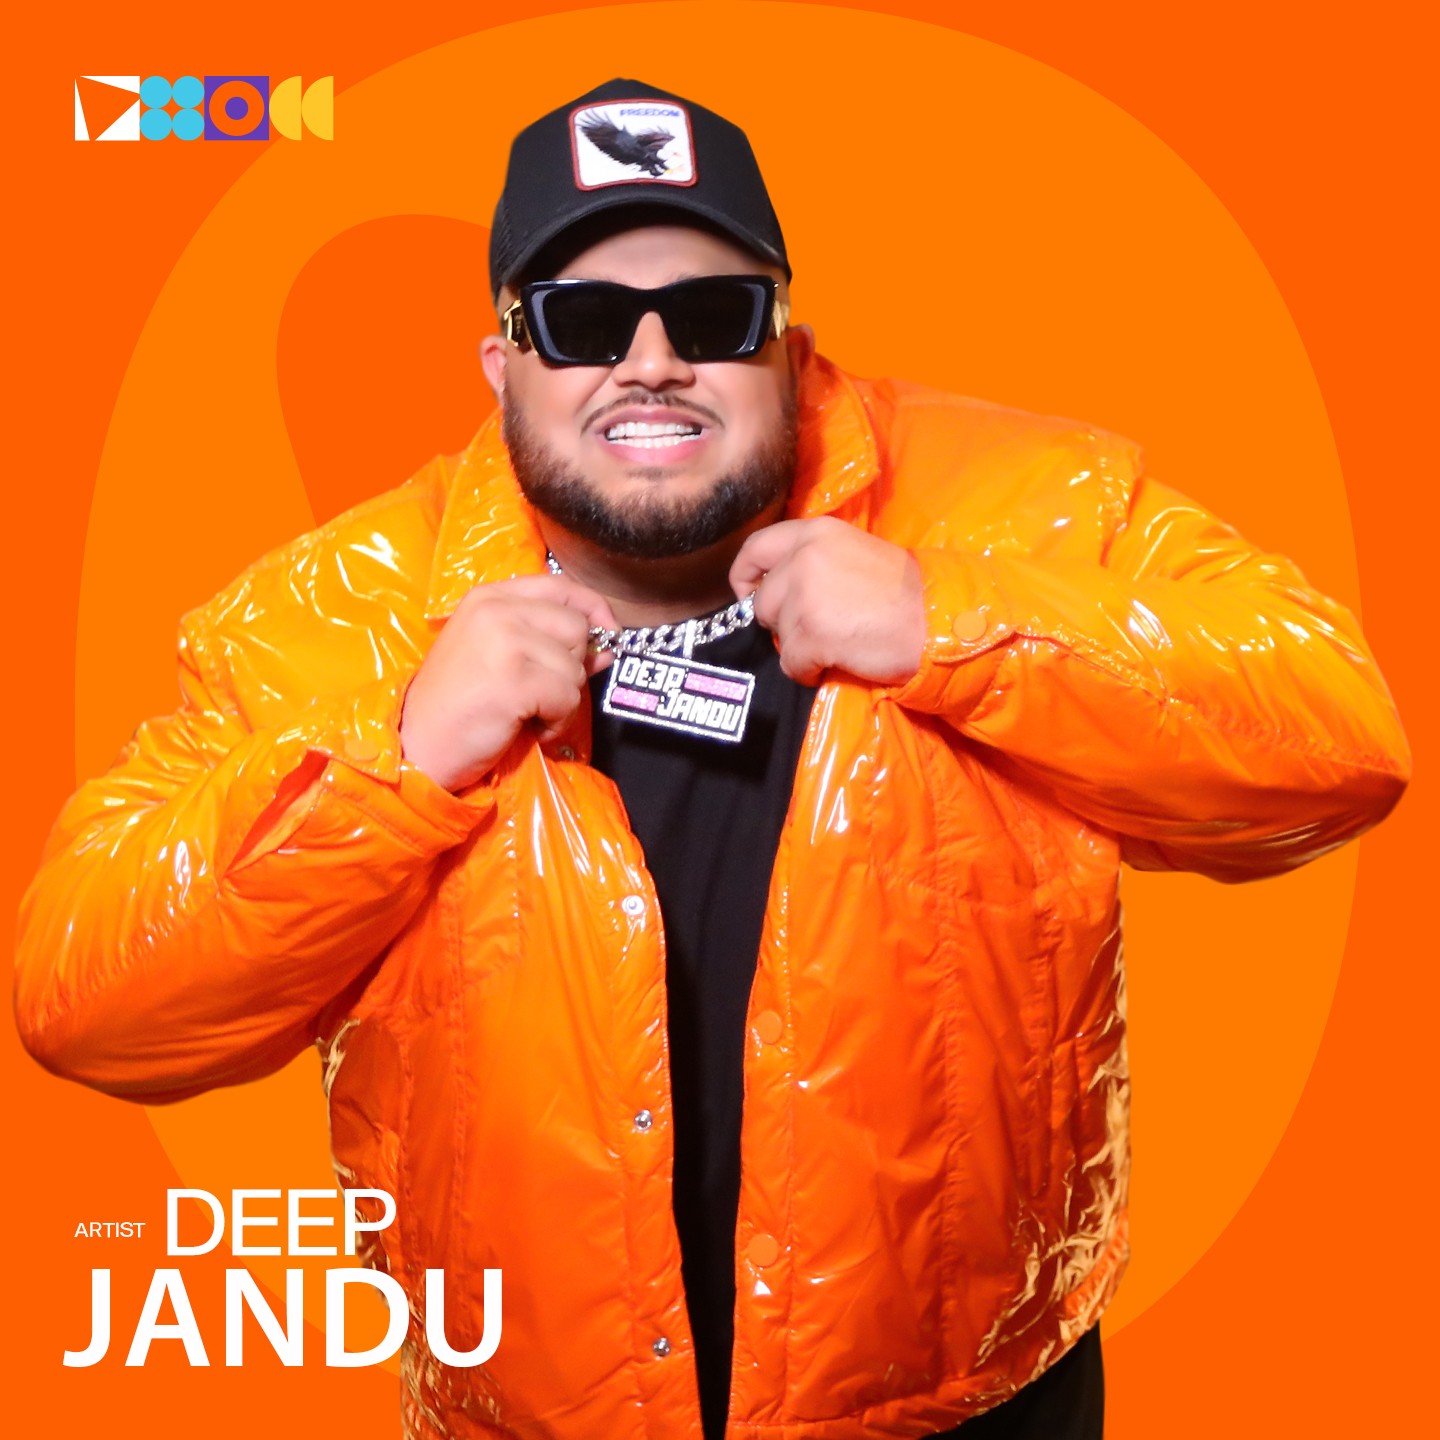 Deep Jandu